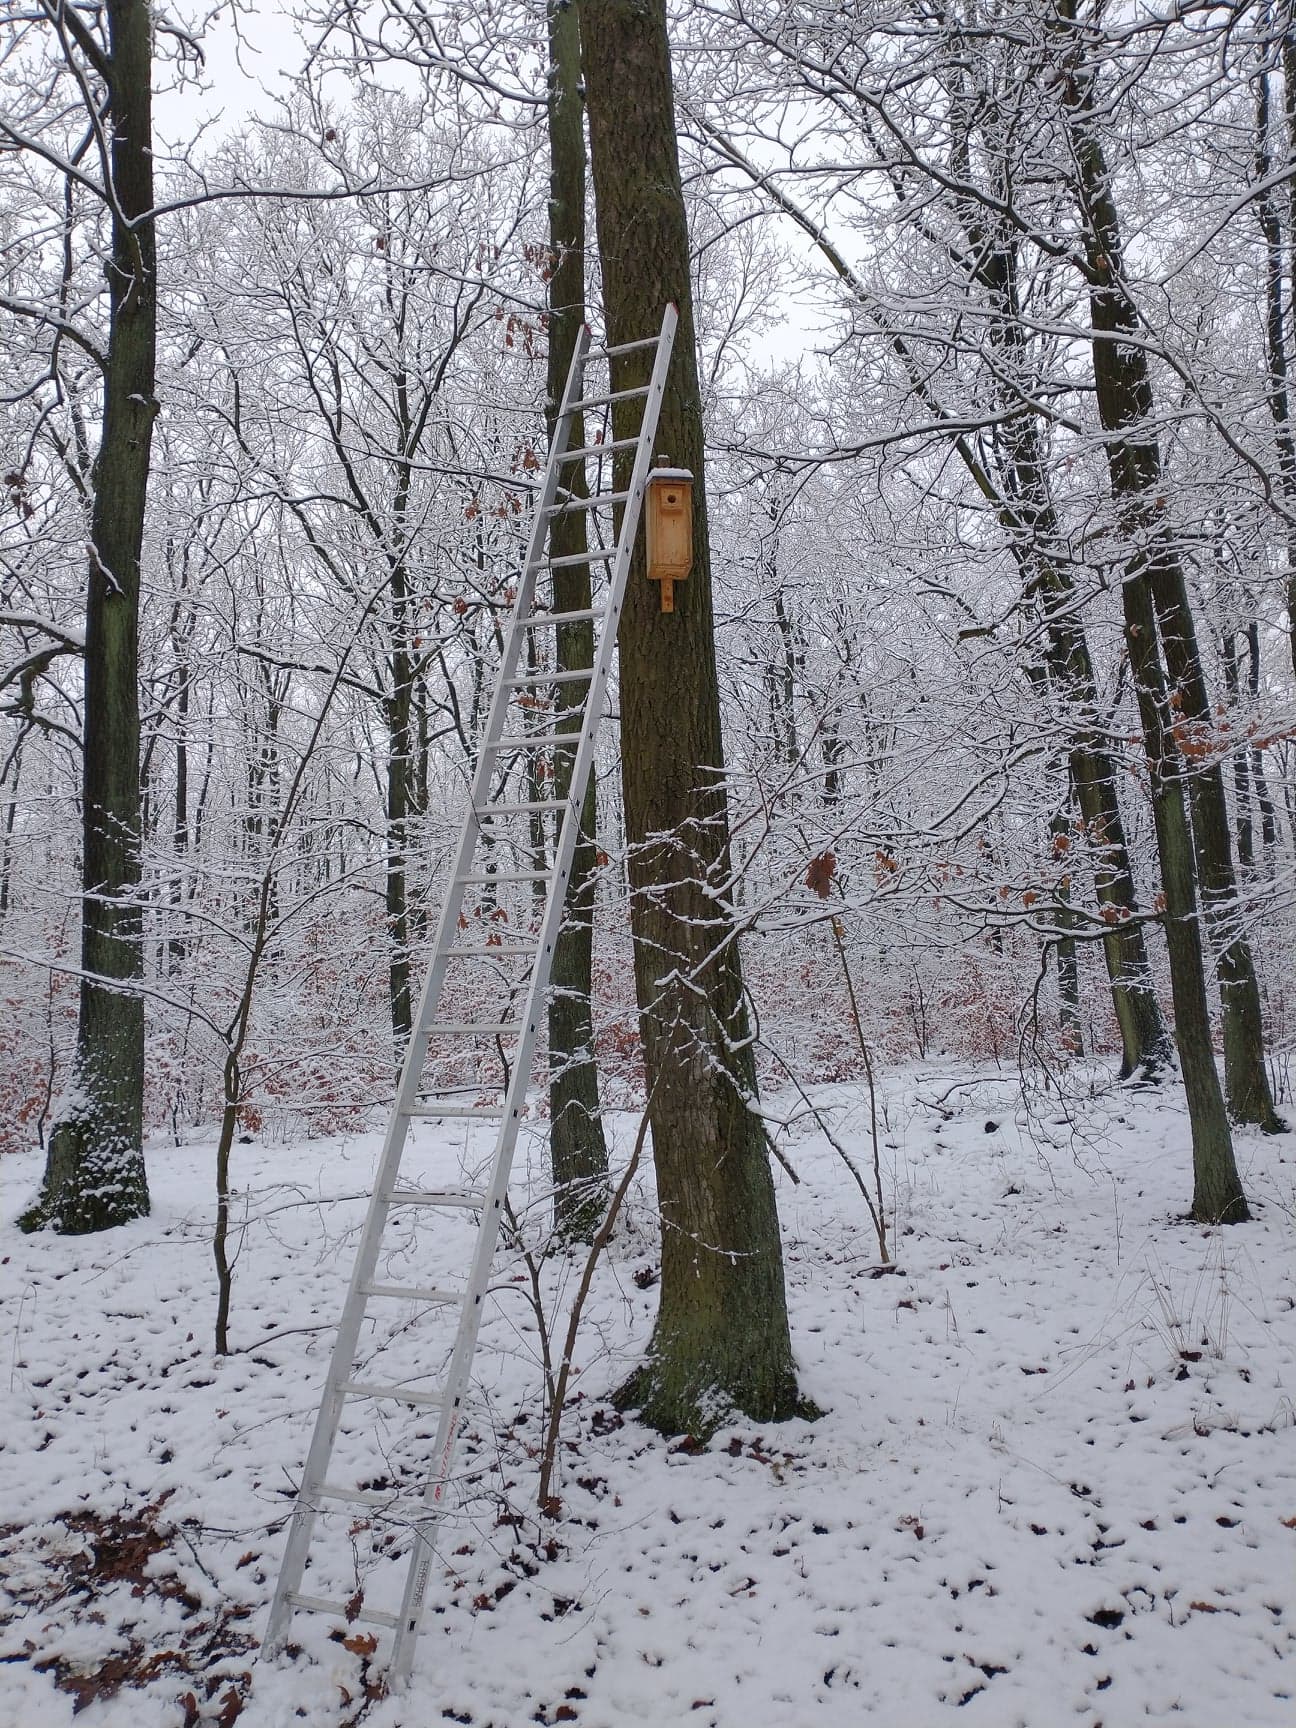 Zdjęcie przedstawia drabinę podstawioną pod drzewo, na którym zawieszona jest budka, wymagająca corocznego czyszczenia. Fot. Janusz Mateja